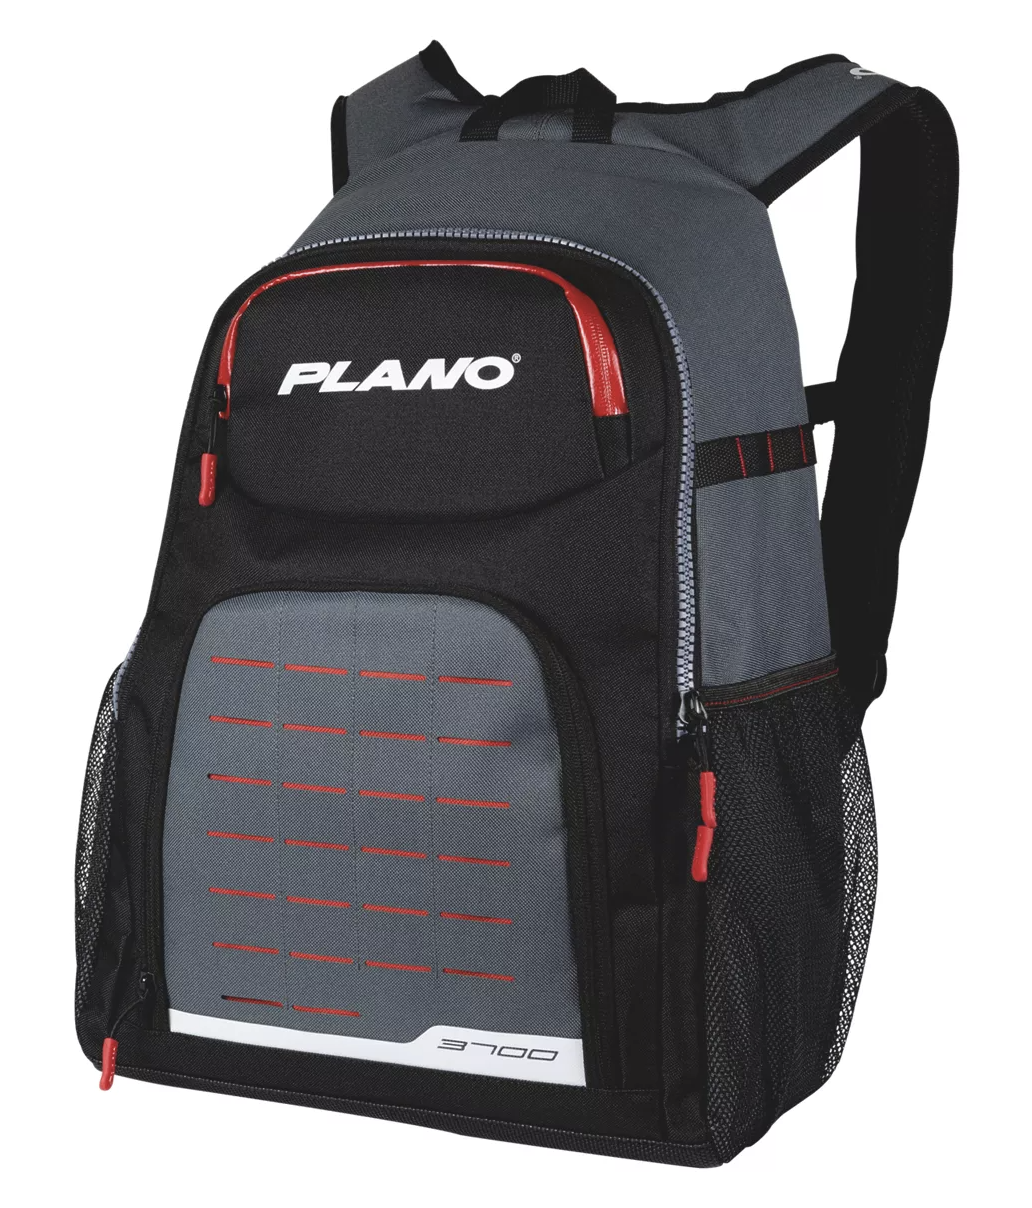 Plano 周末系列背包渔具包